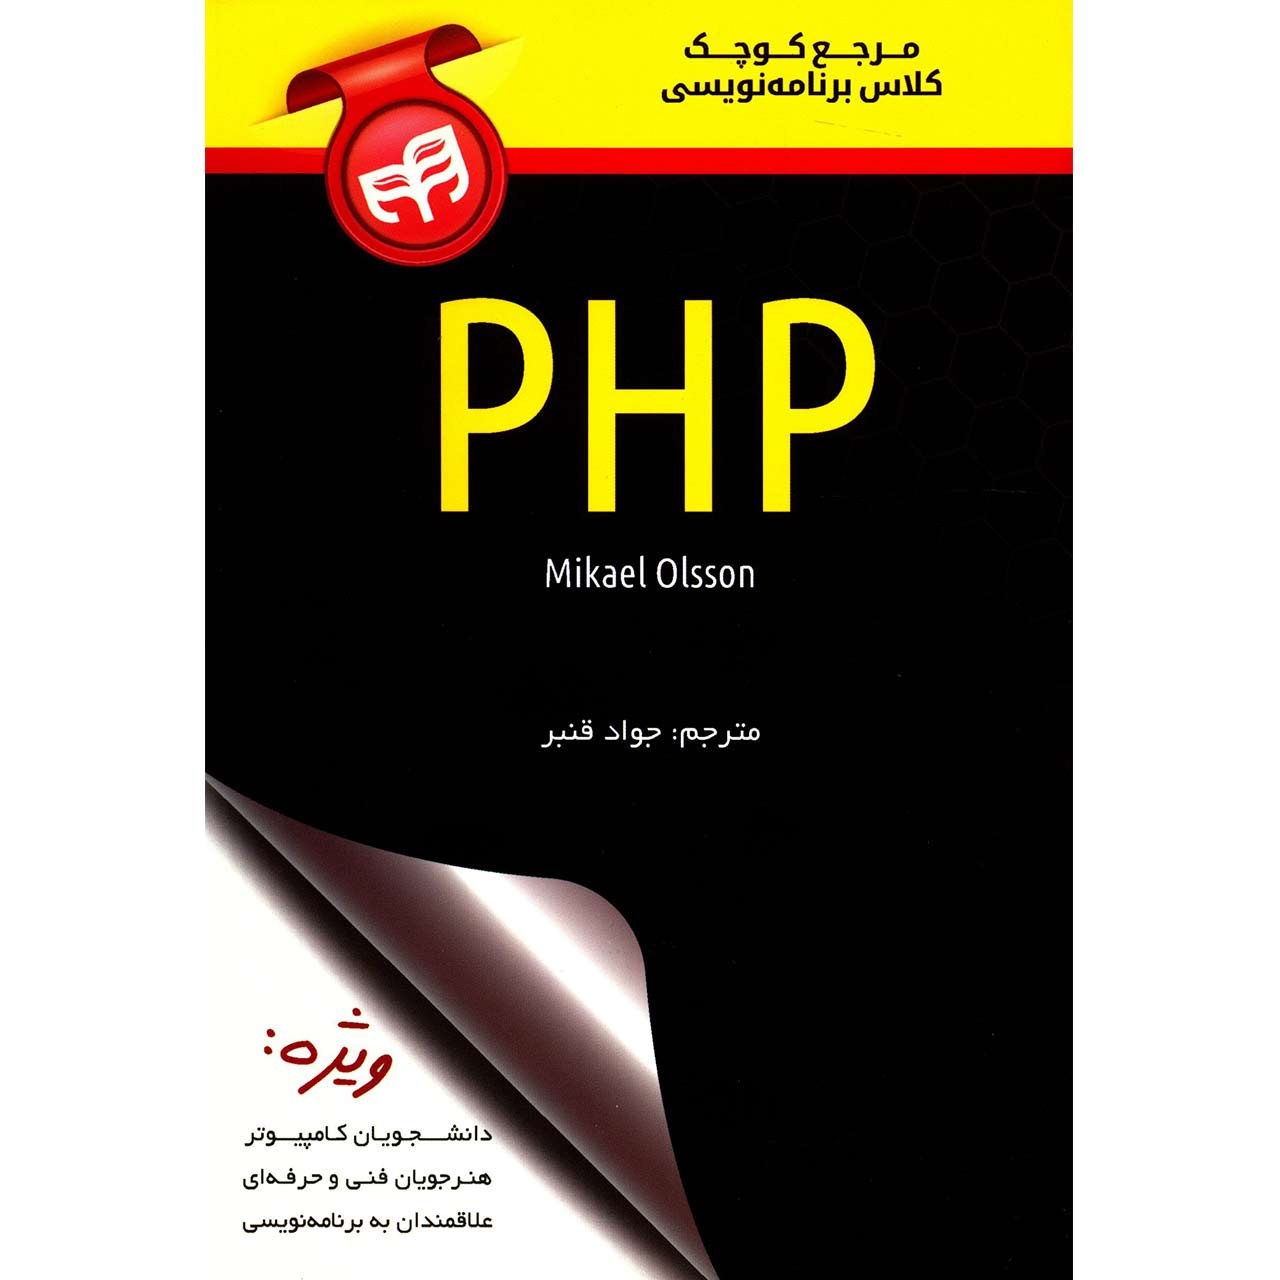 کتاب مرجع کوچک کلاس برنامه نویسی PHP اثر مایکل اولسون